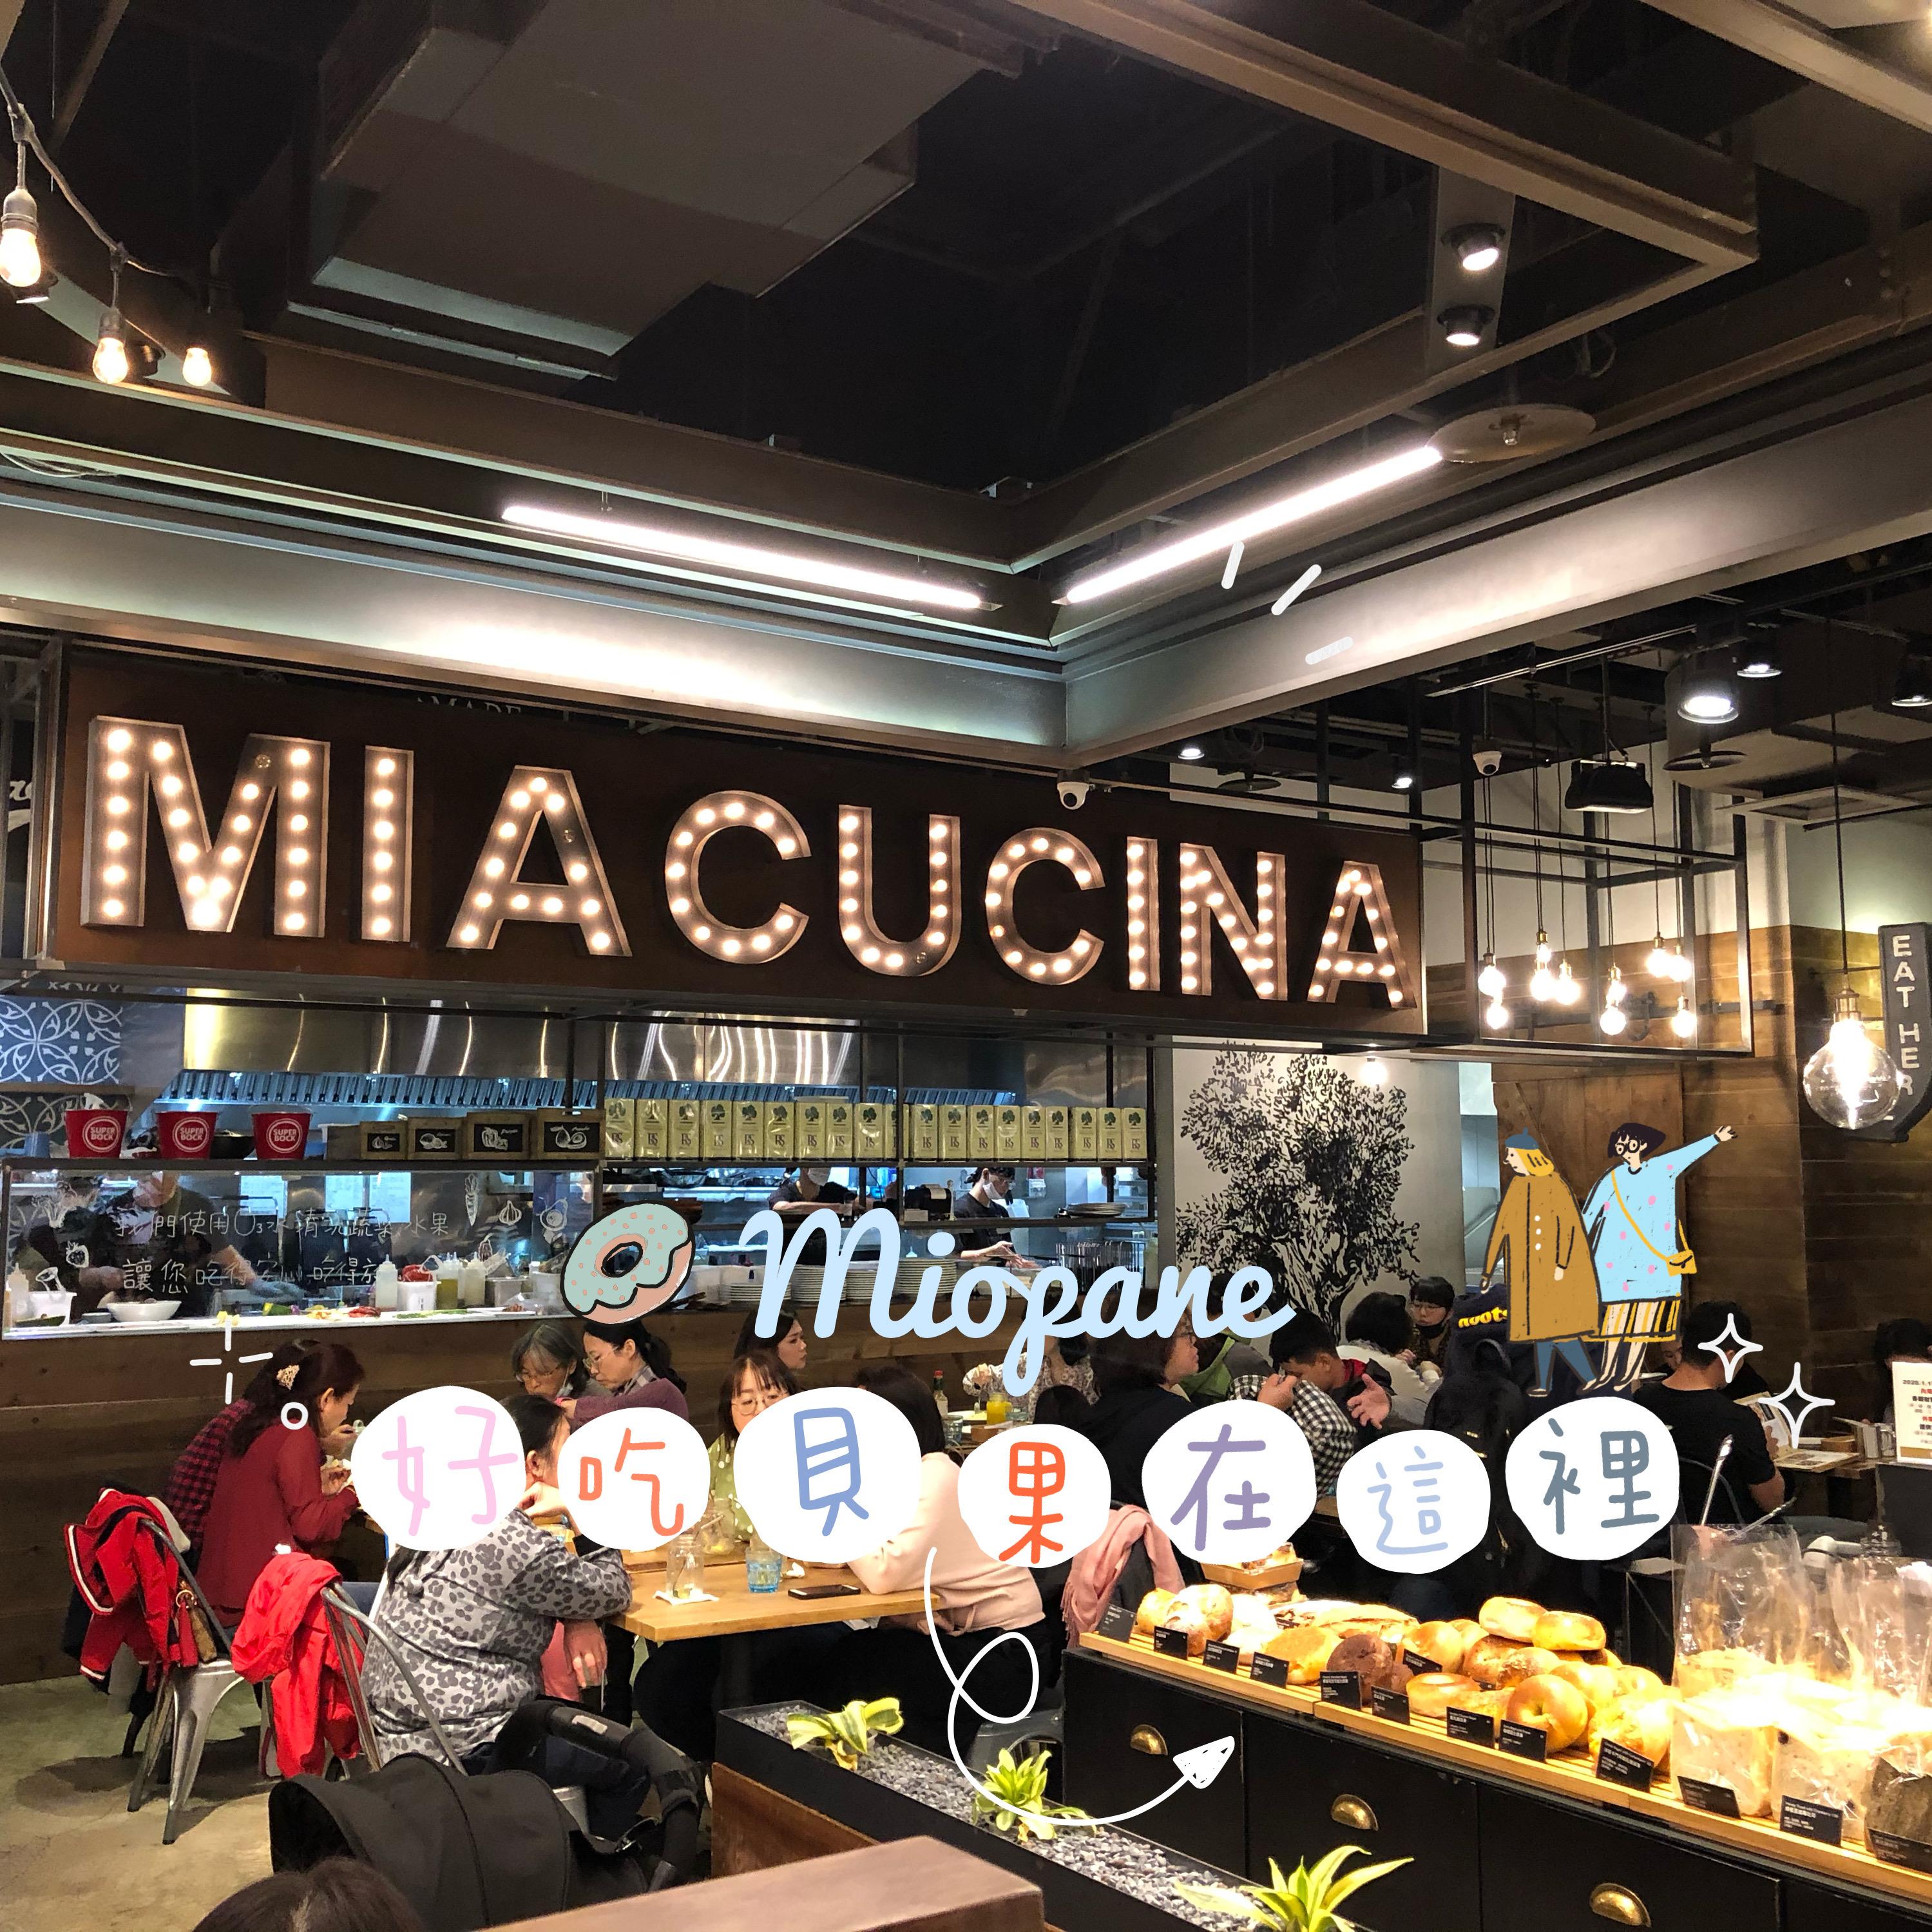 隱身在姐妹店Miacucia義大利餐廳的Miopane